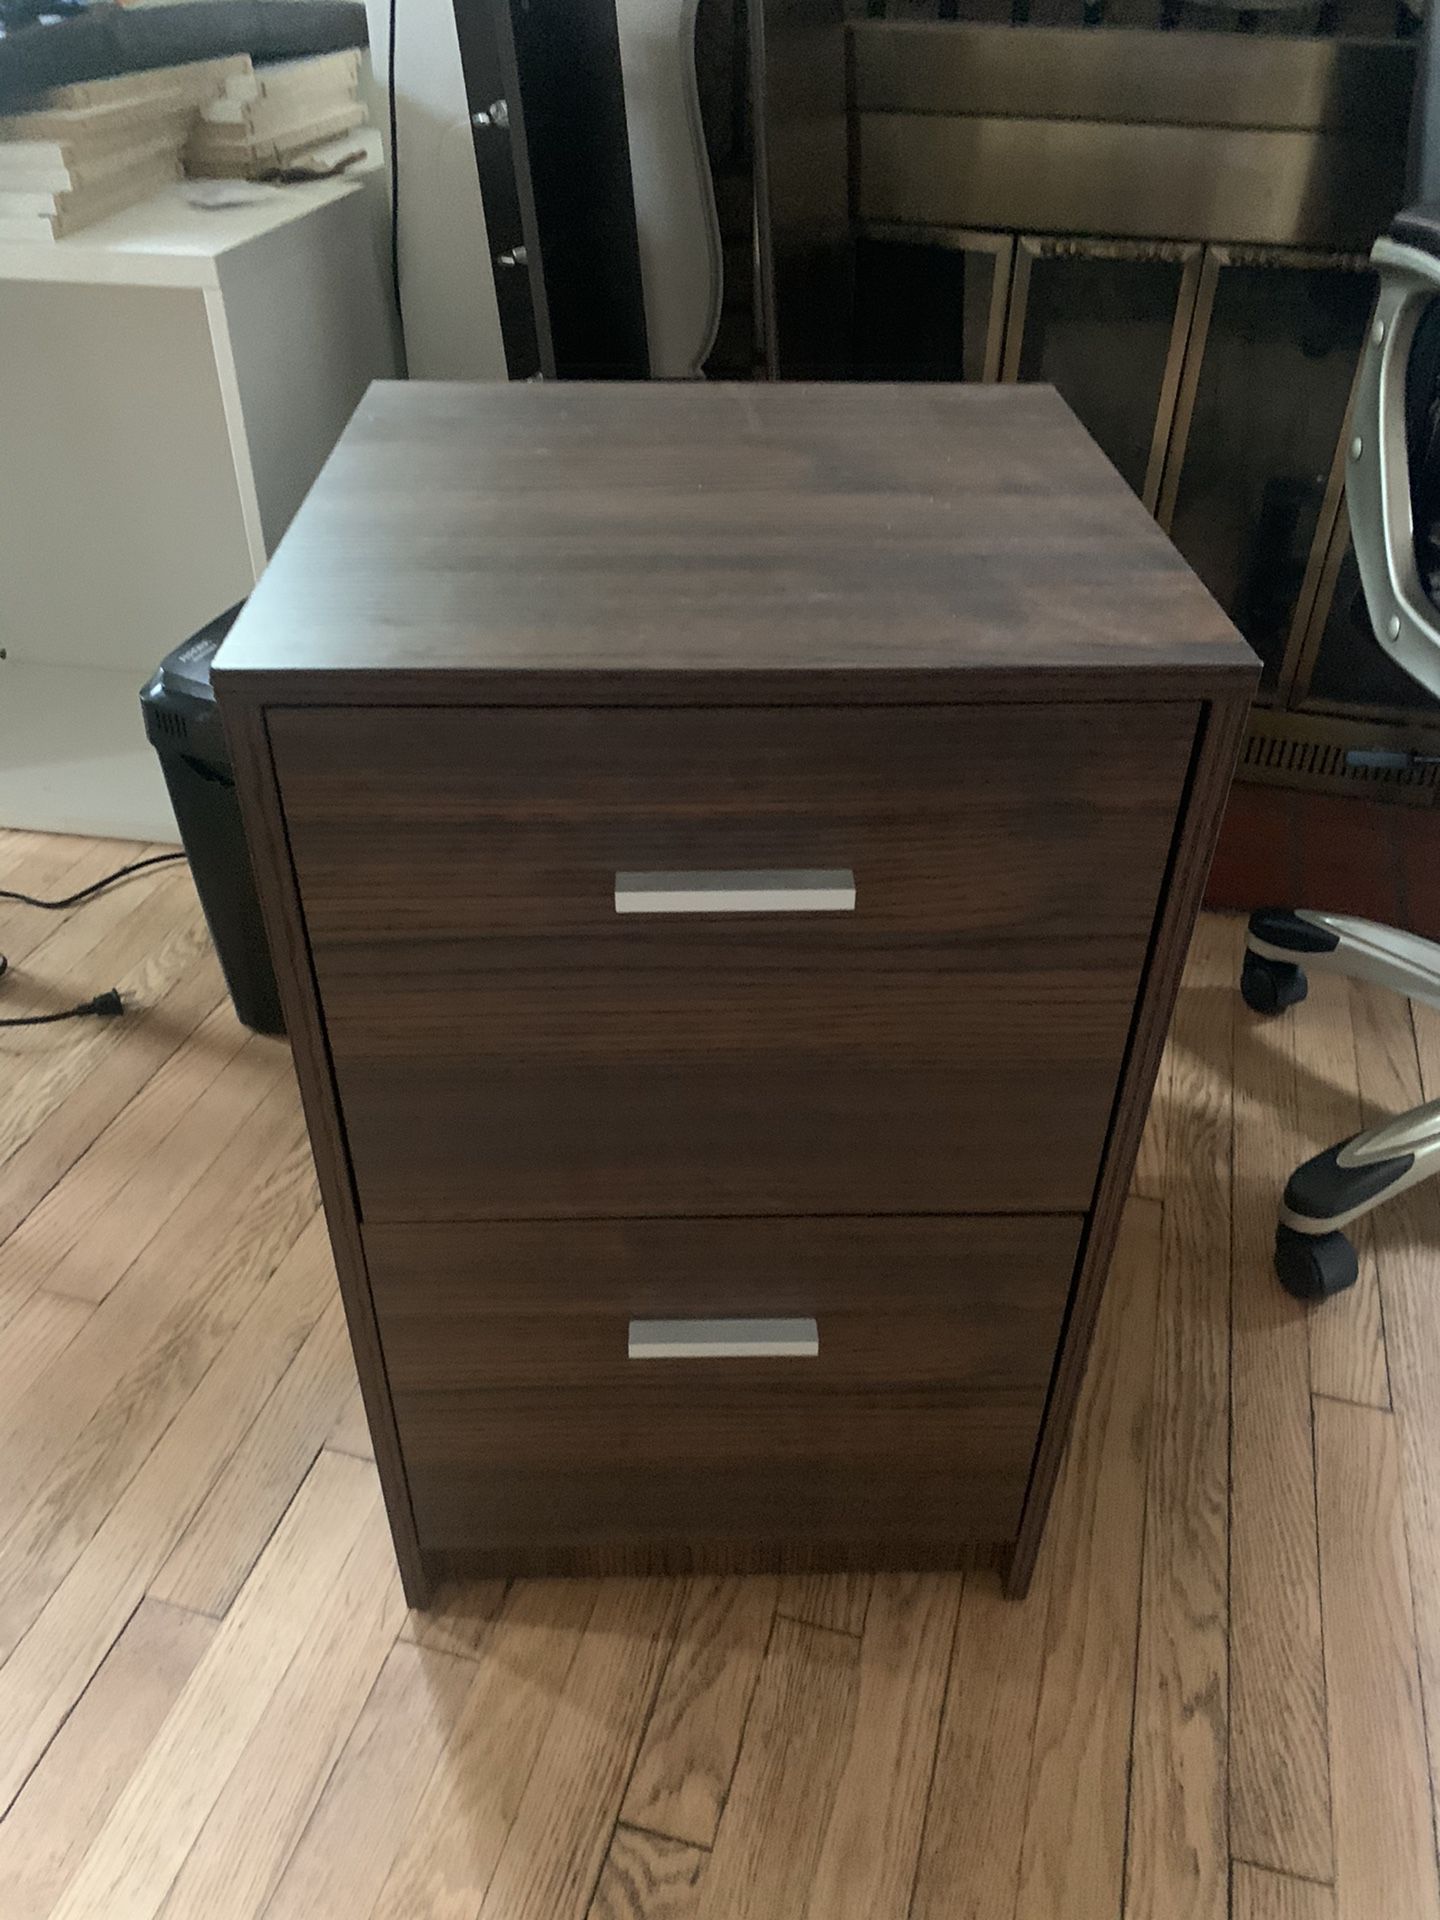 file cabinet excellent shape